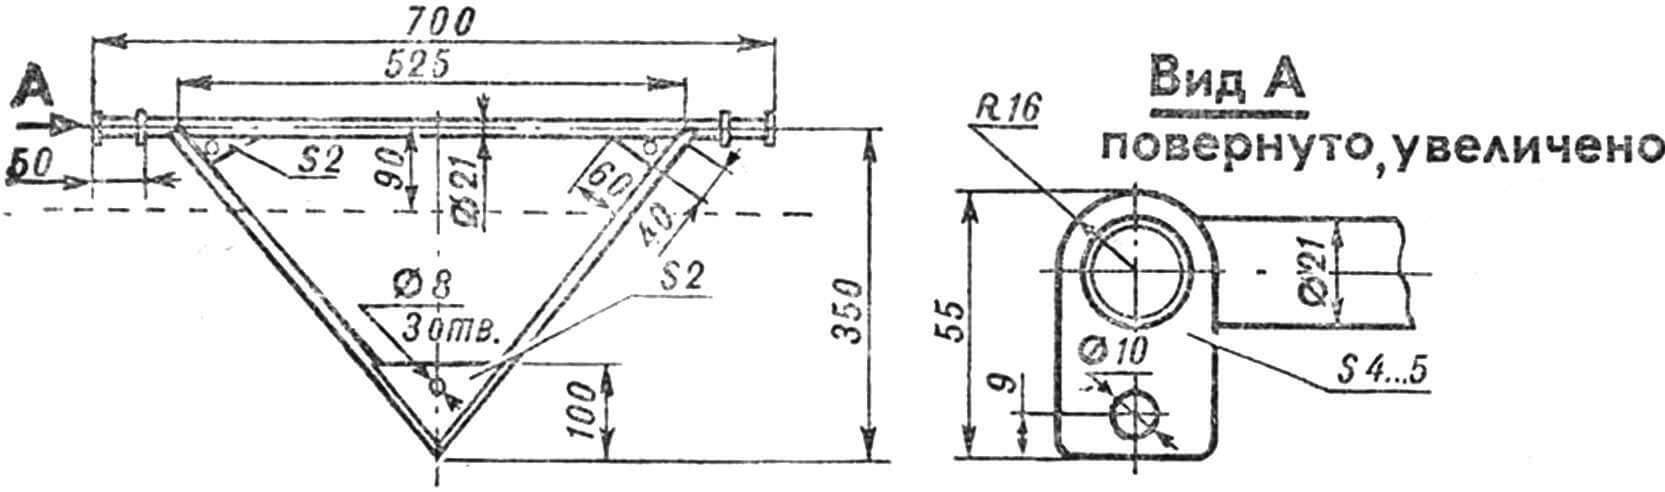 Рис. 4. Треугольник крепления передних проушин рессор переднего моста. Пунктиром показана передняя кромка днища.